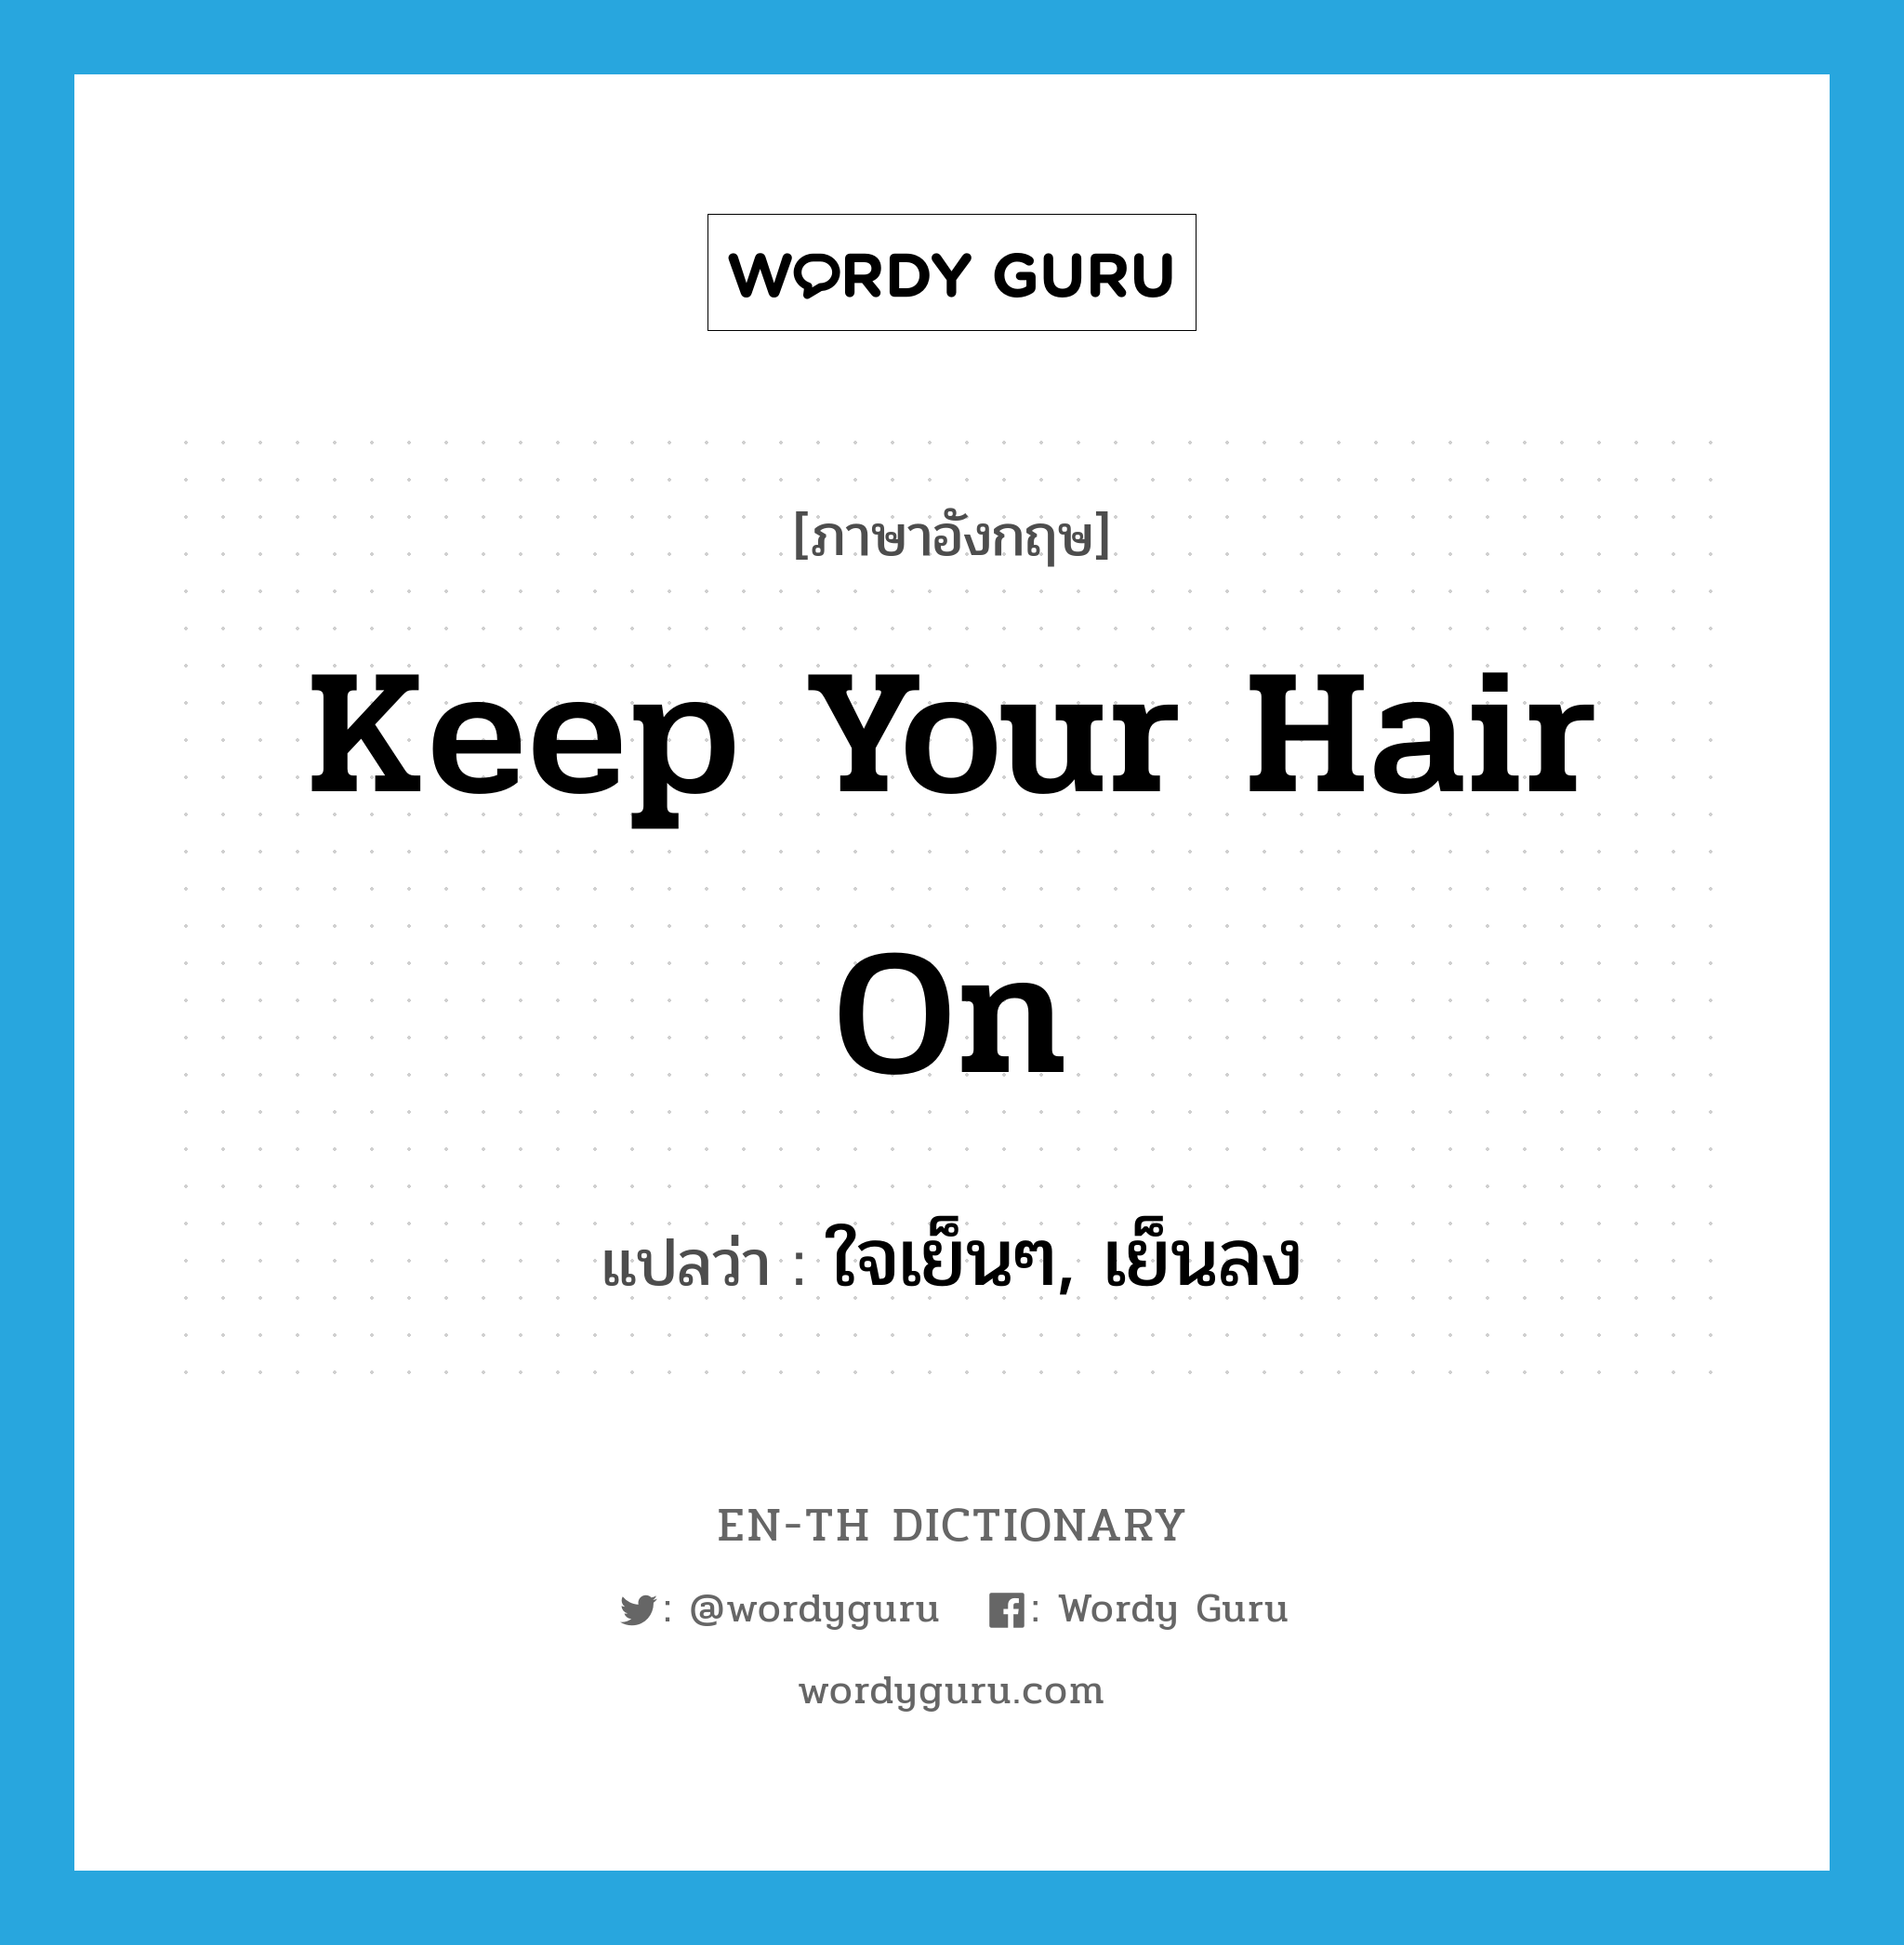 ใจเย็นๆ, เย็นลง ภาษาอังกฤษ?, คำศัพท์ภาษาอังกฤษ ใจเย็นๆ, เย็นลง แปลว่า Keep your hair on ประเภท SL หมวด SL